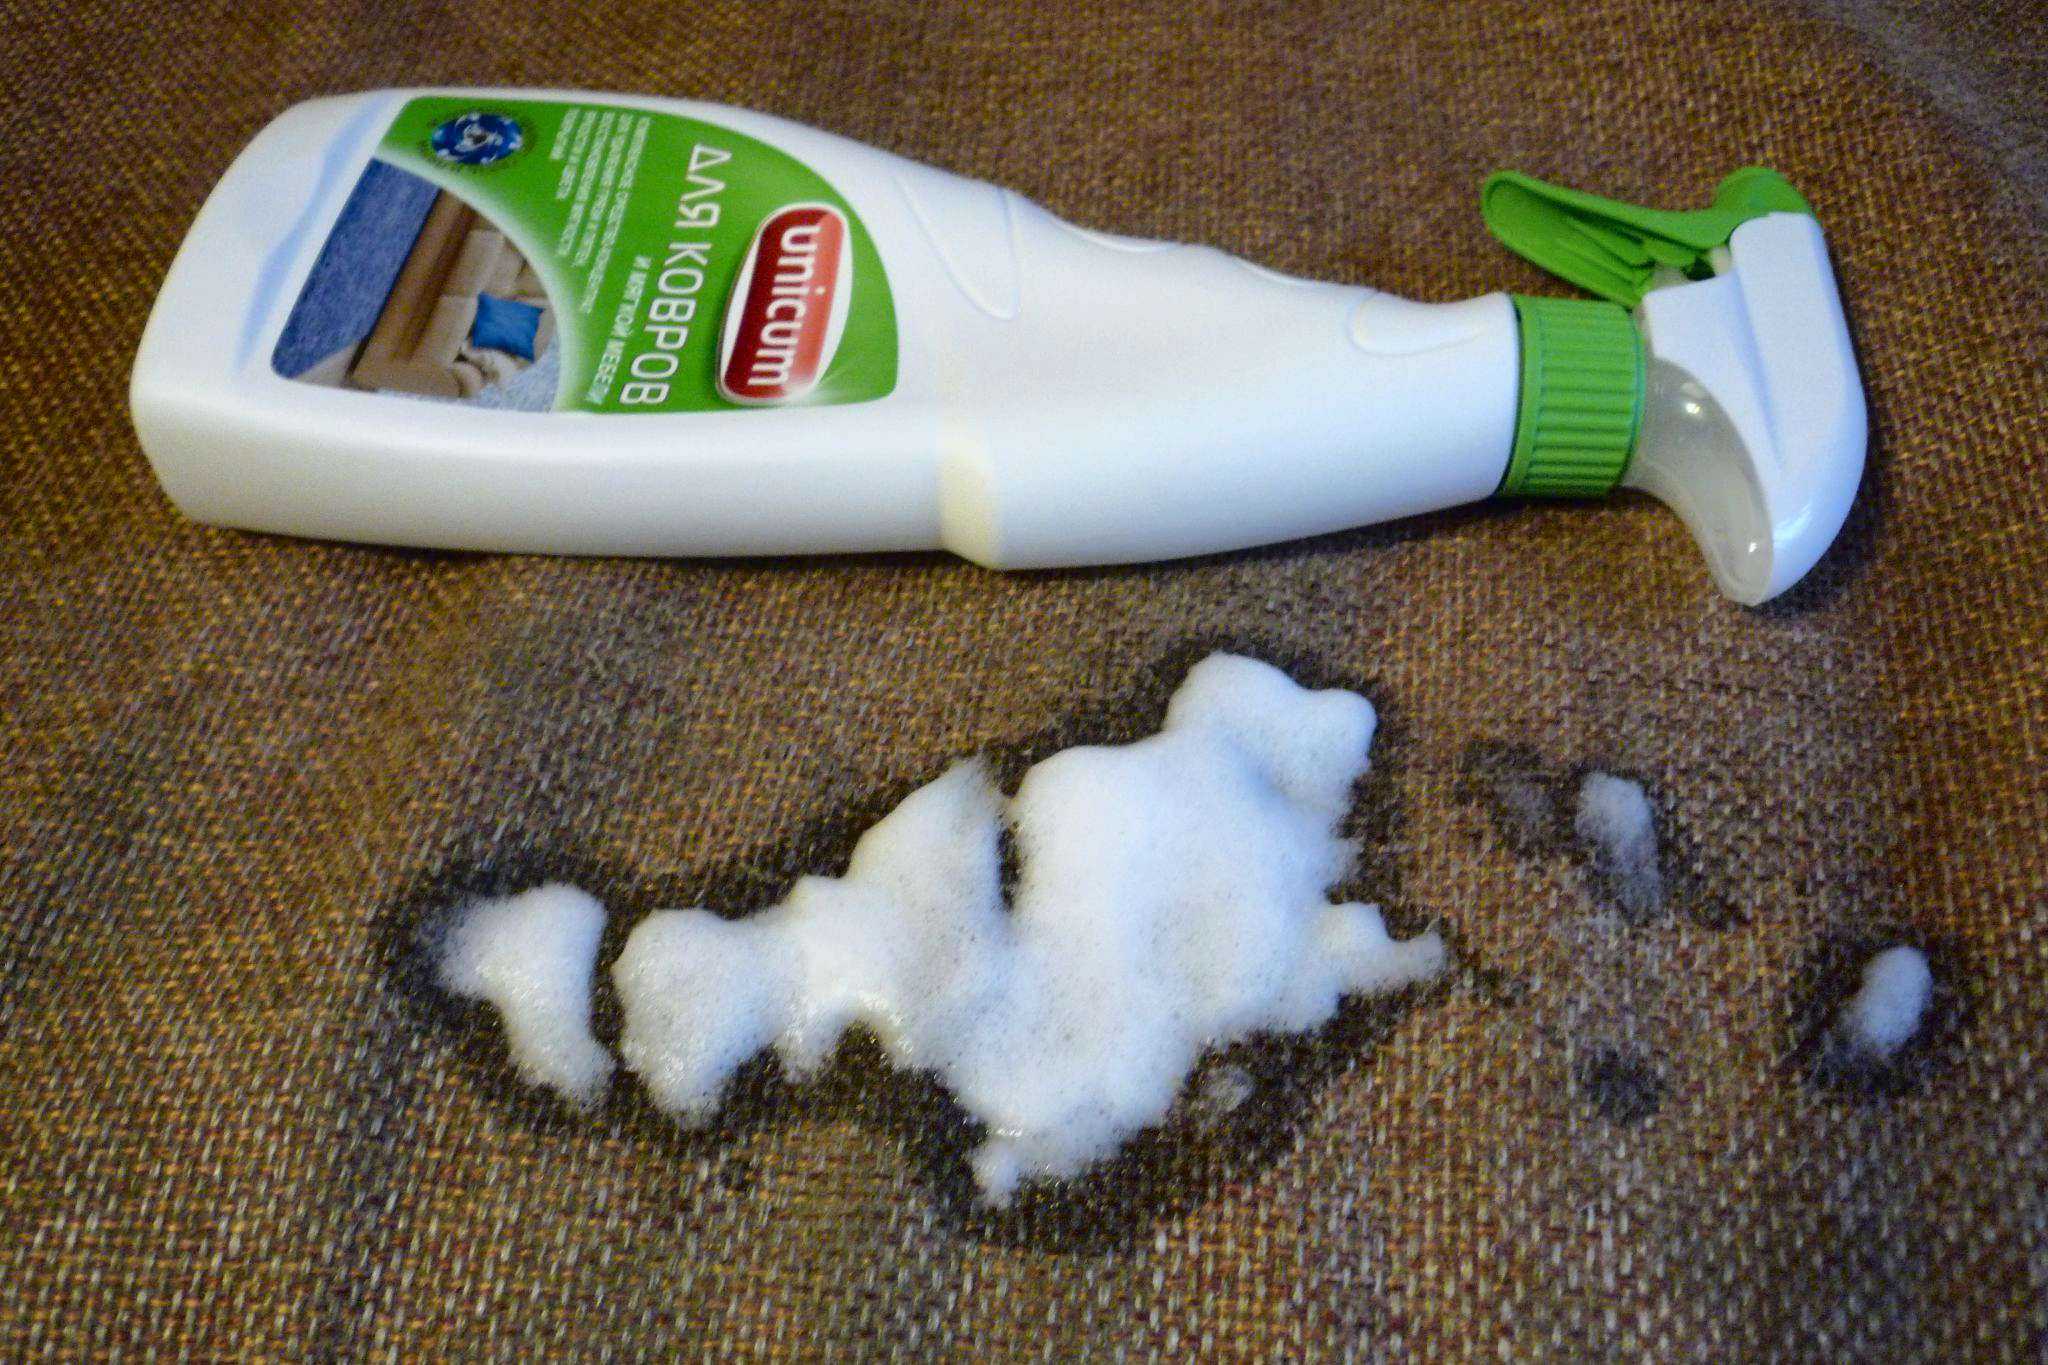 Как отмыть пол после ремонта от пыли, штукатурки, побелки, как и чем убрать разводы